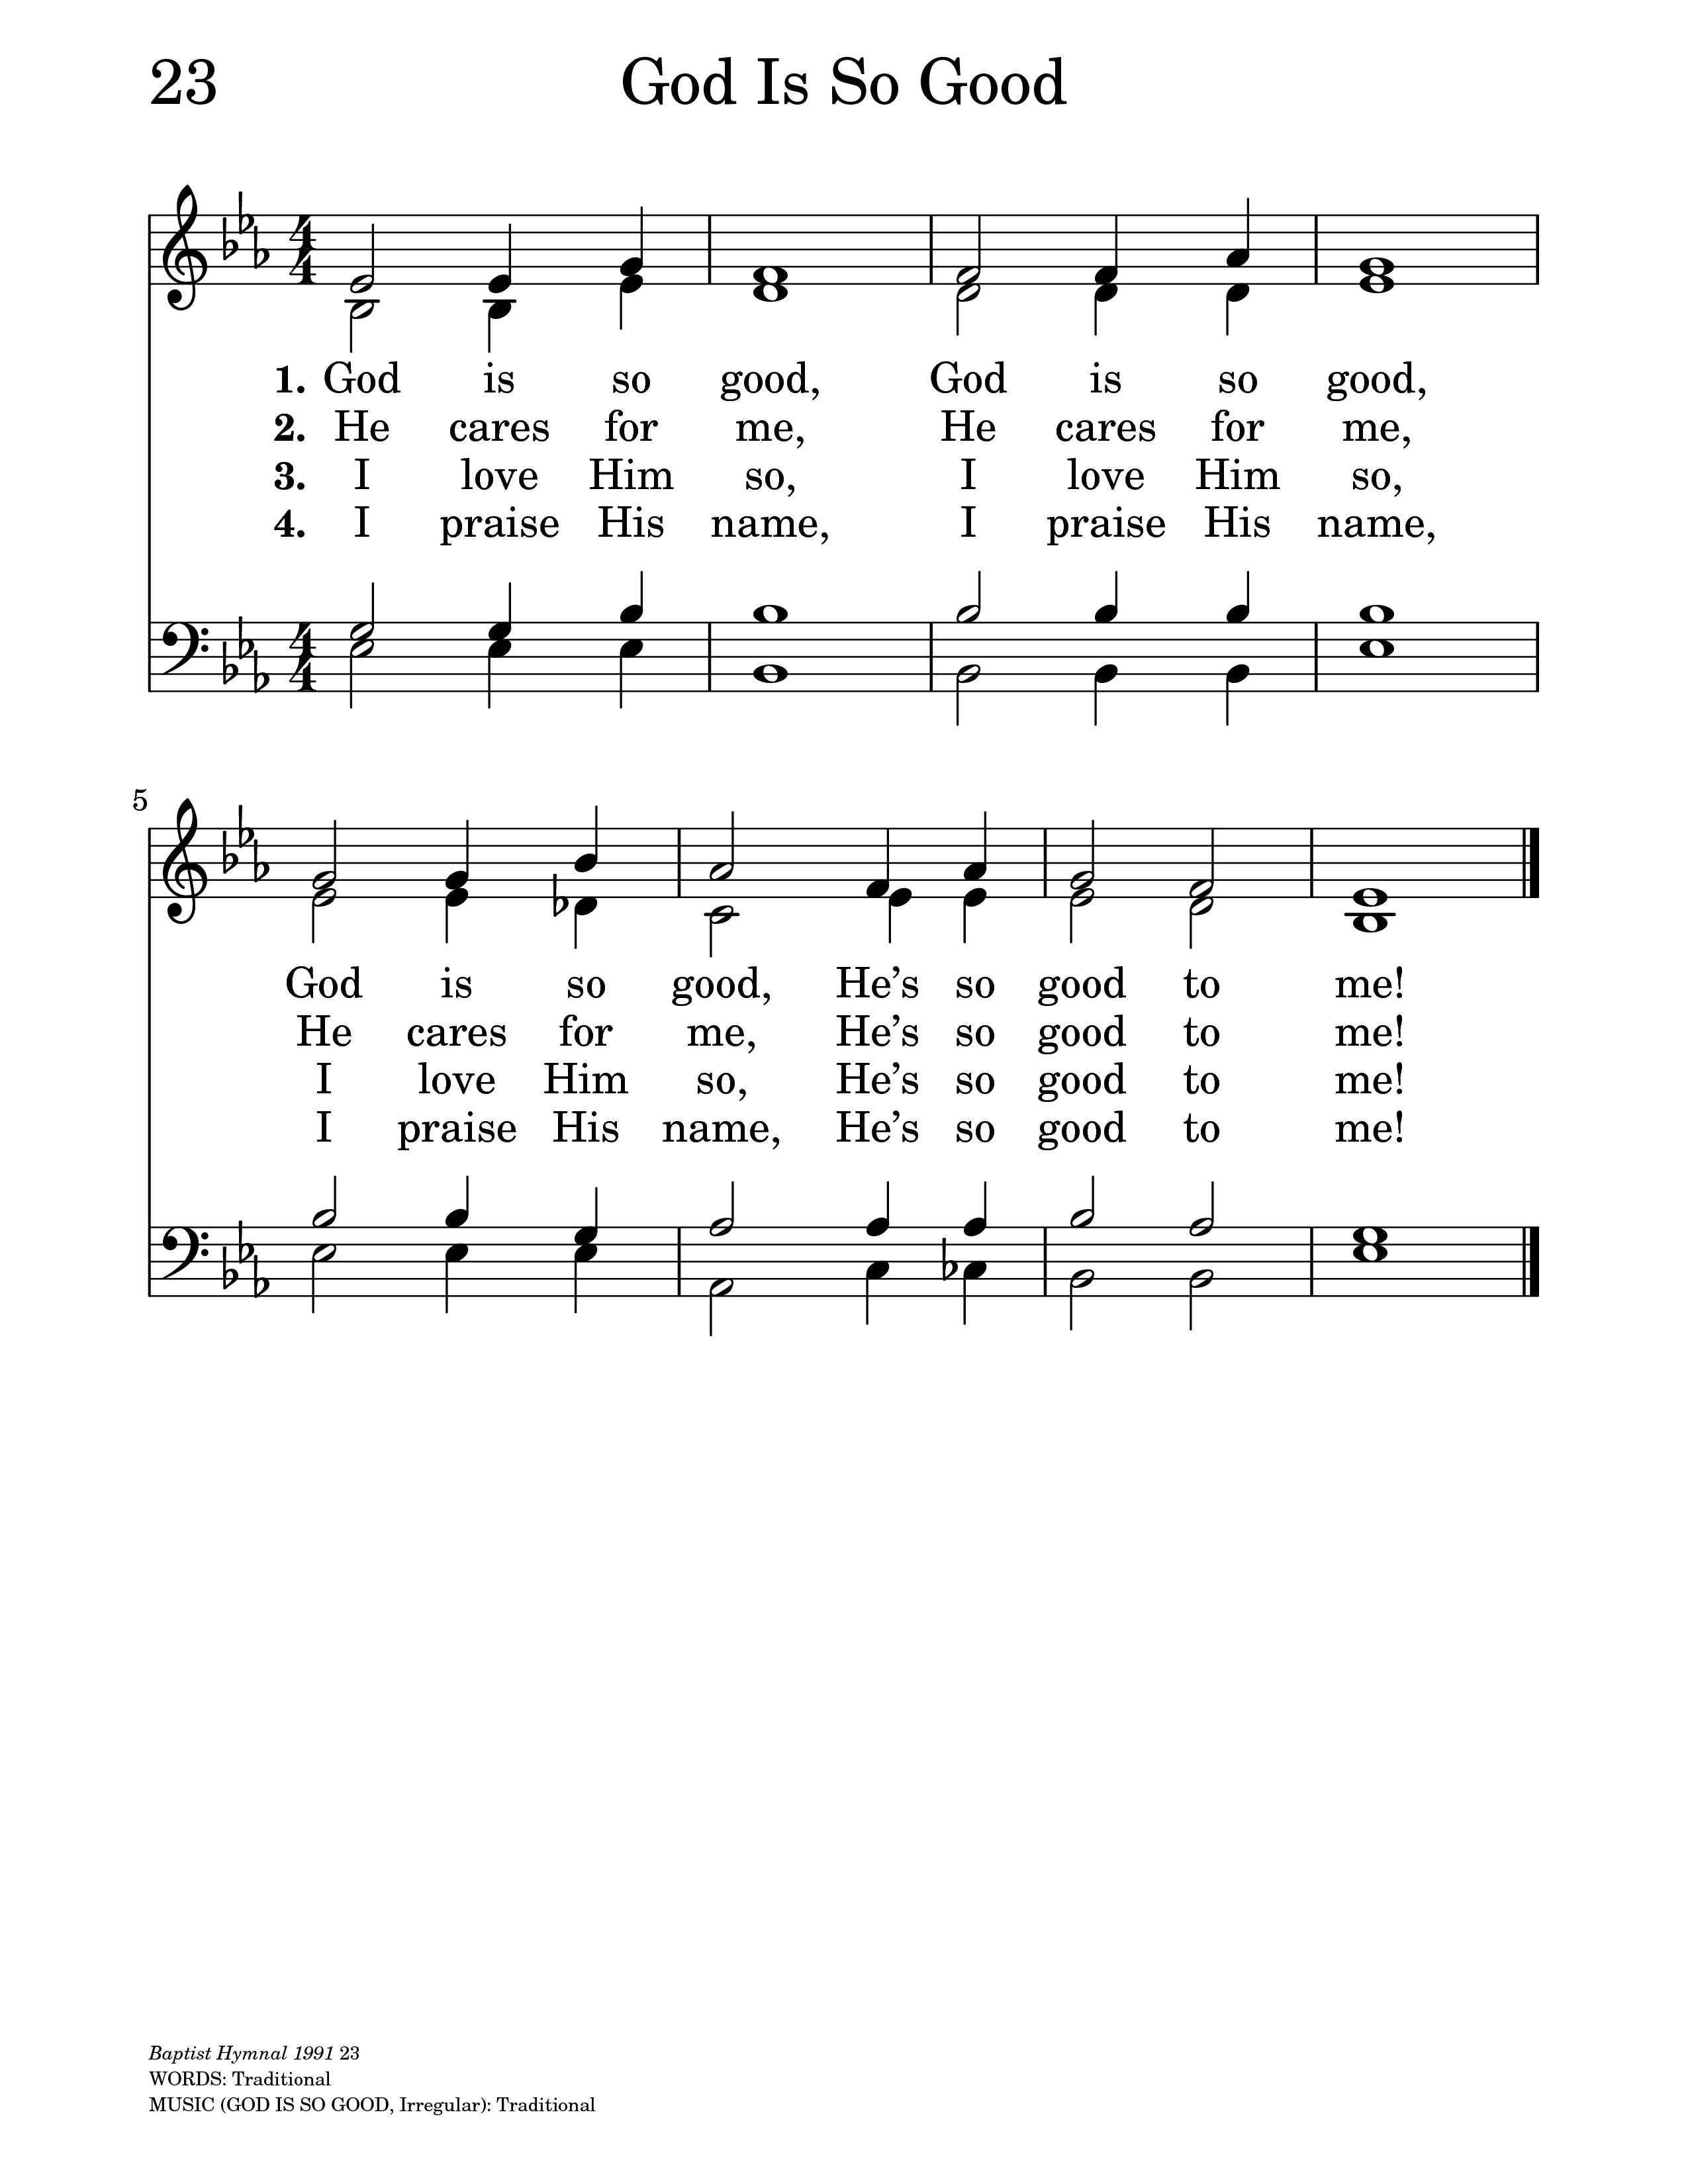 baptist 1991 hymnal for easyworship 6